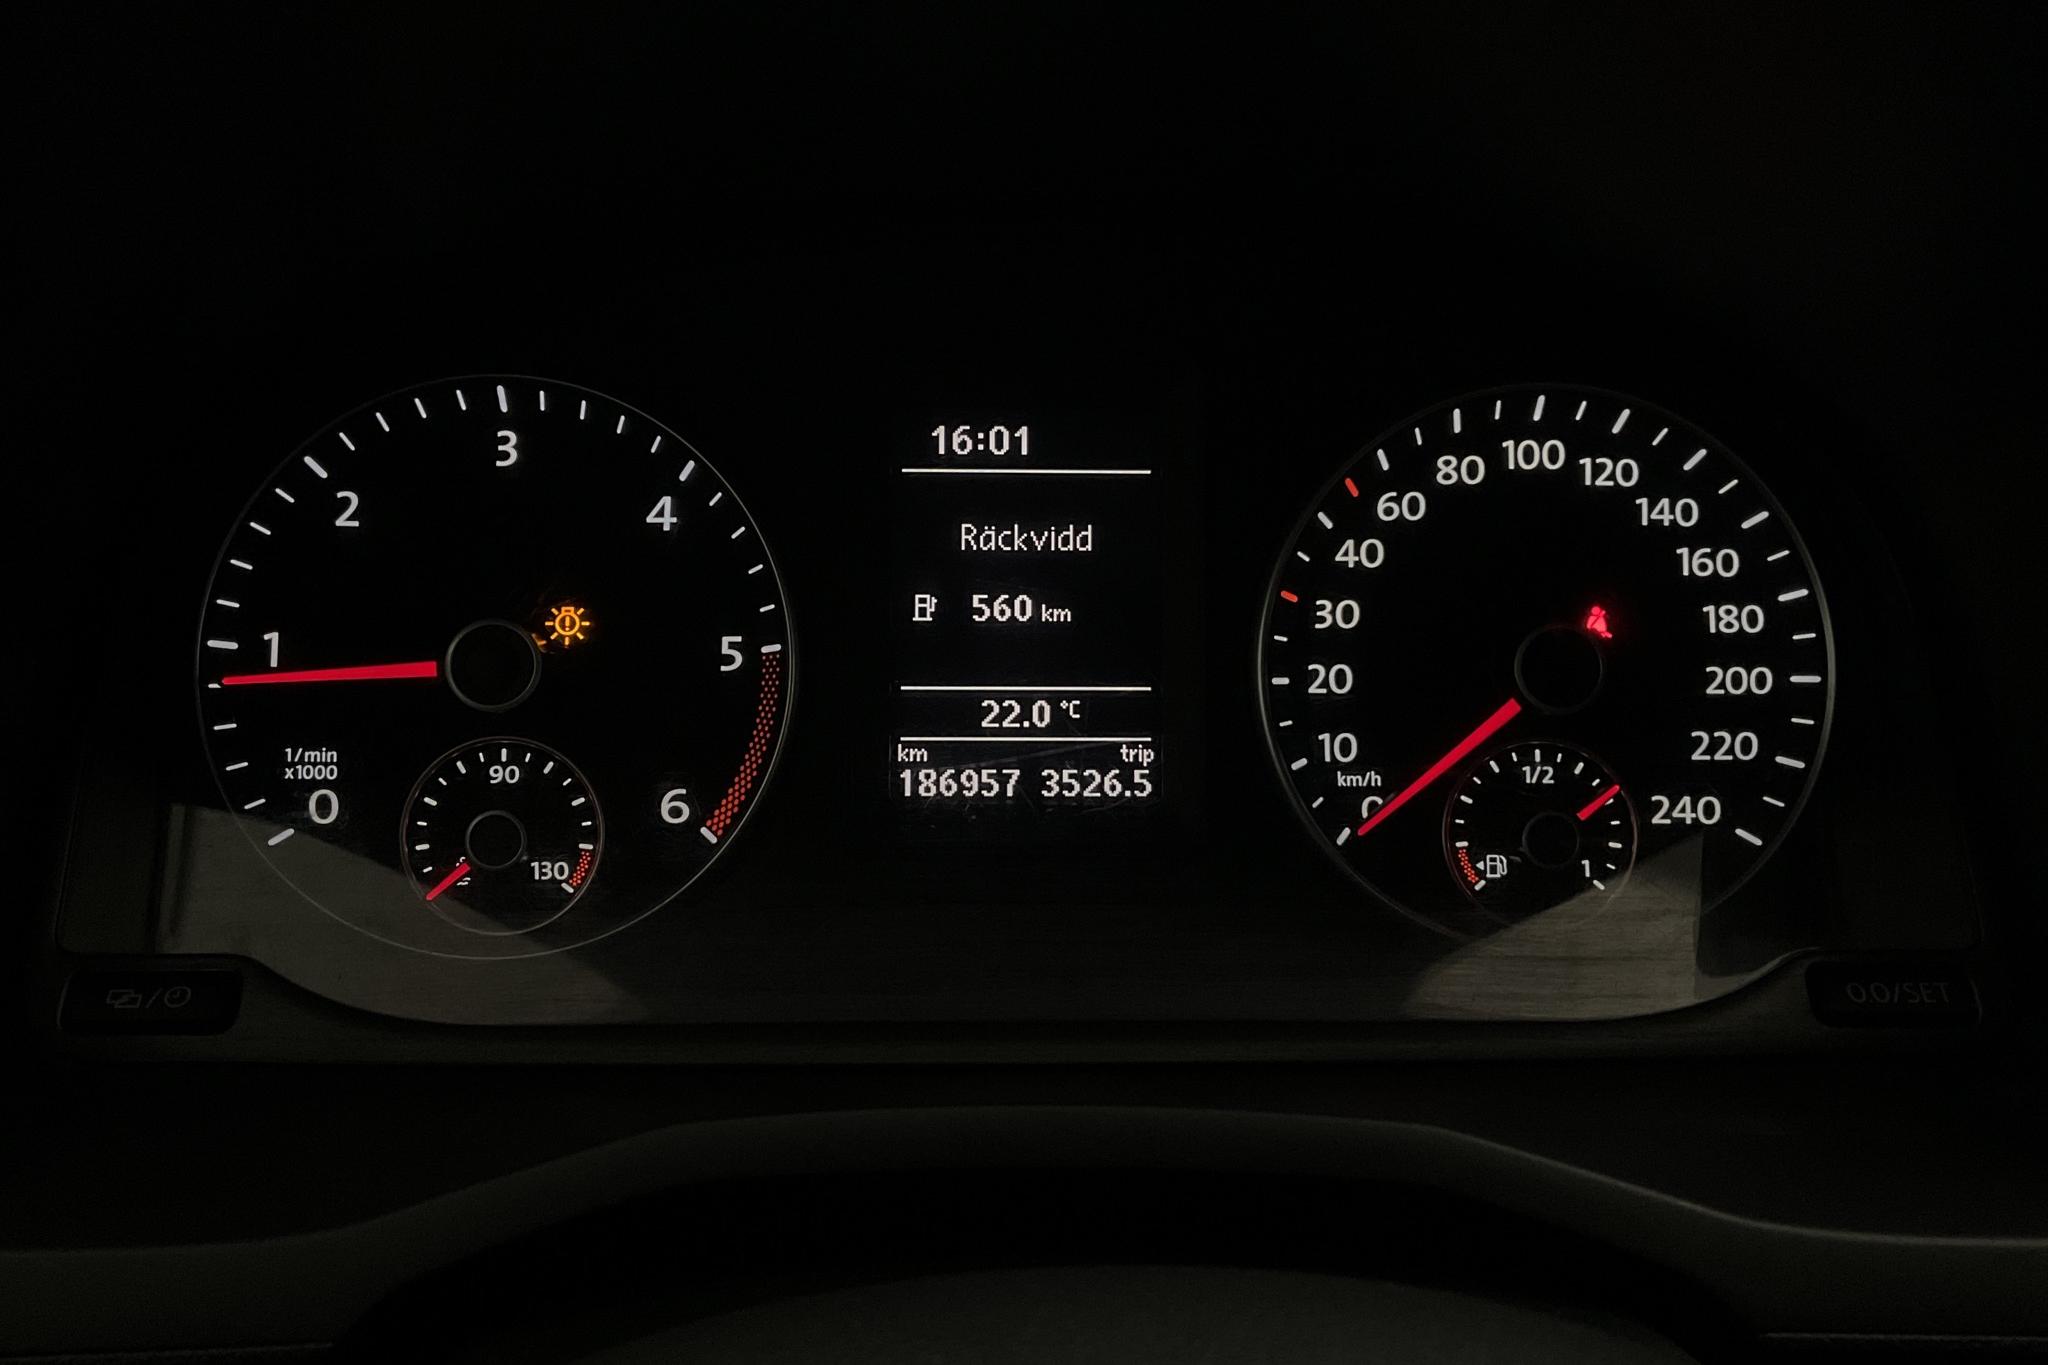 VW Caddy 2.0 TDI Maxi Skåp 4MOTION (122hk) - 186 950 km - Manual - white - 2016